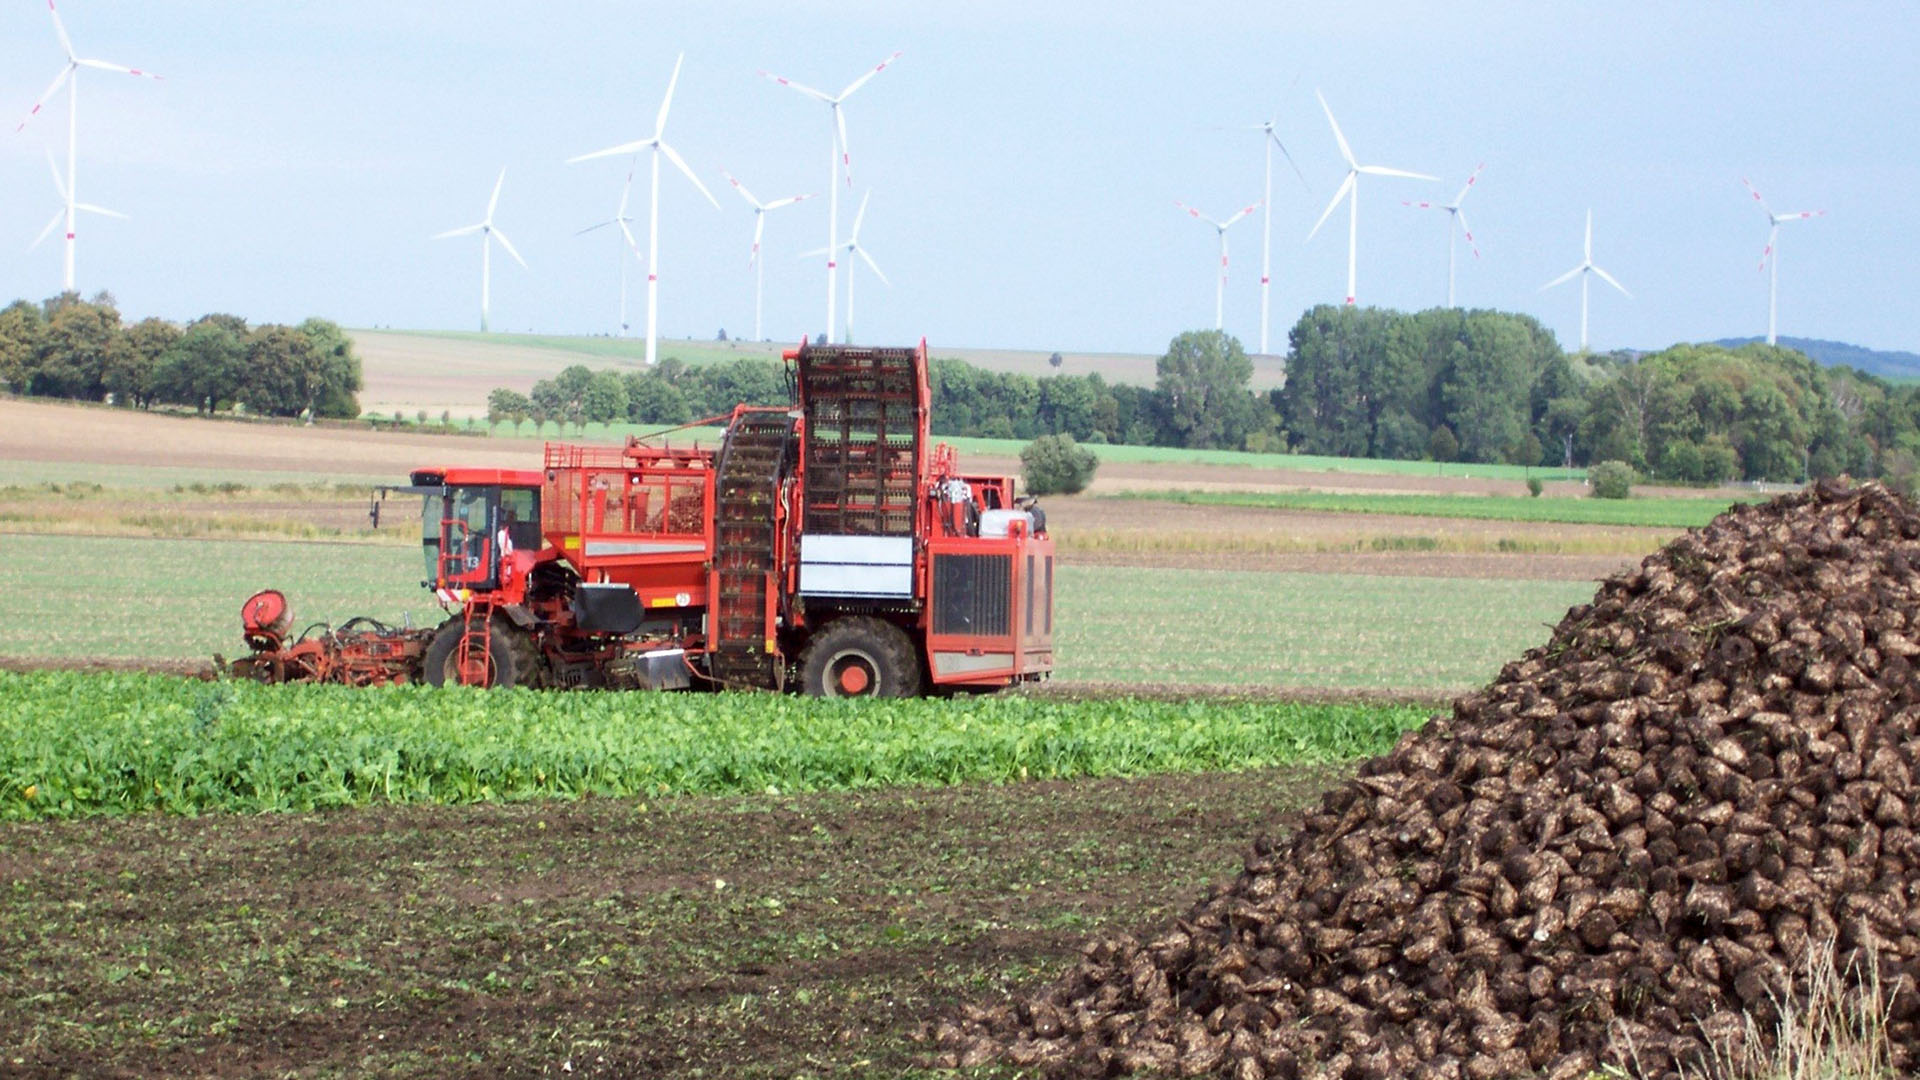 Auf einem landwirtschaftlich bewirtschafteten Feld steht ein roter Rübenroder, der Zuckerrüben erntet. Am rechten Bildrand ist bereits ein Hügel voller Rüben angehäuft.